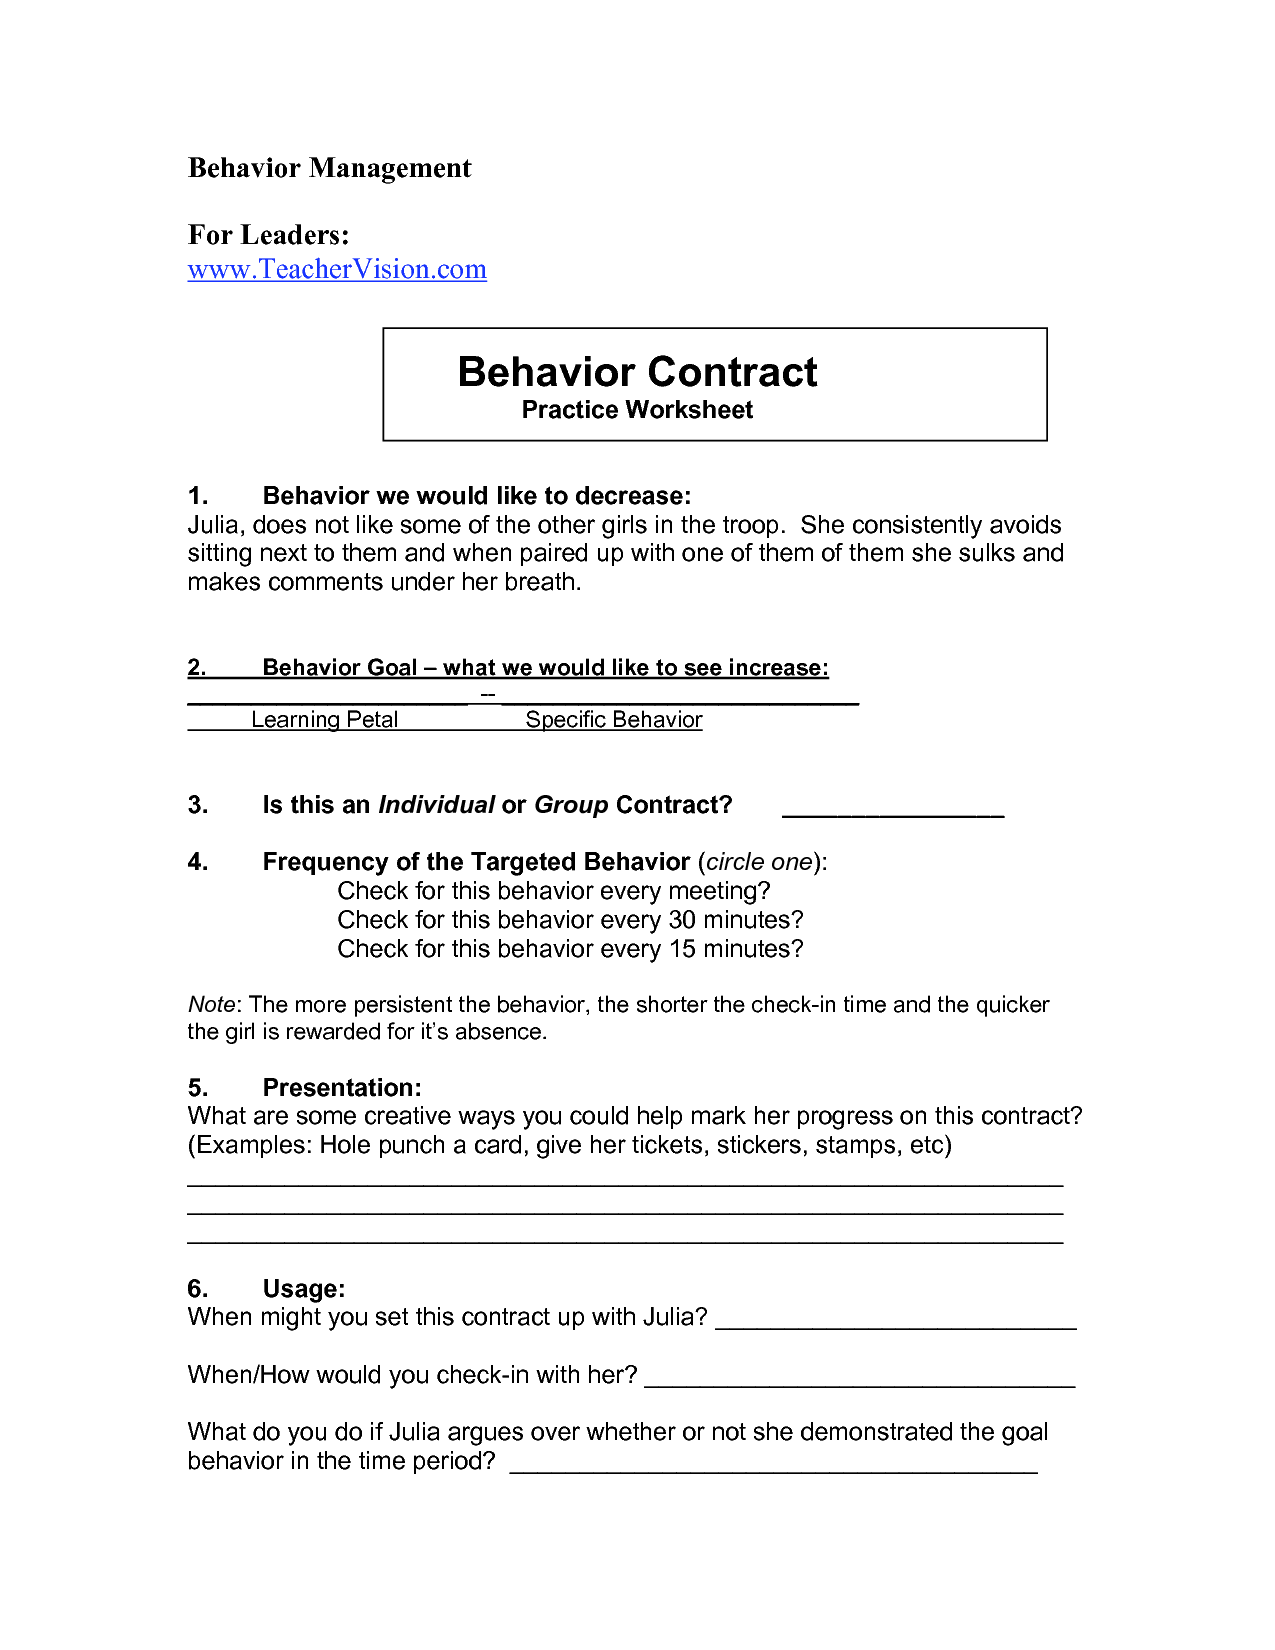 Behavior Management Worksheets Image